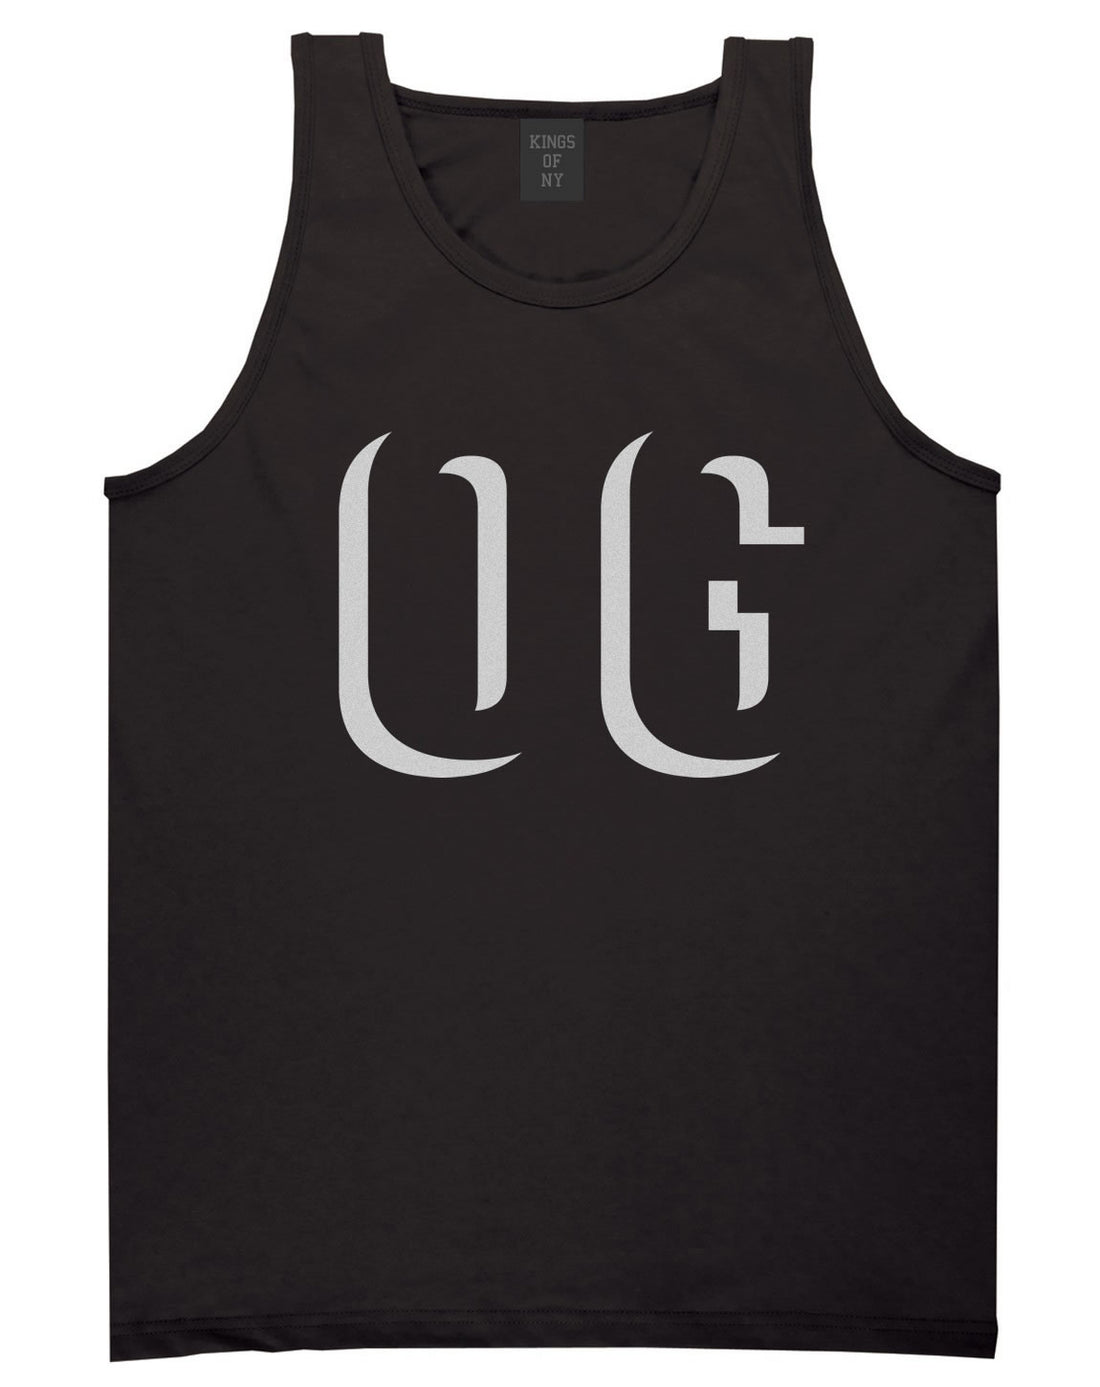 OG Shadow Originial Gangster Tank Top in Black by Kings Of NY